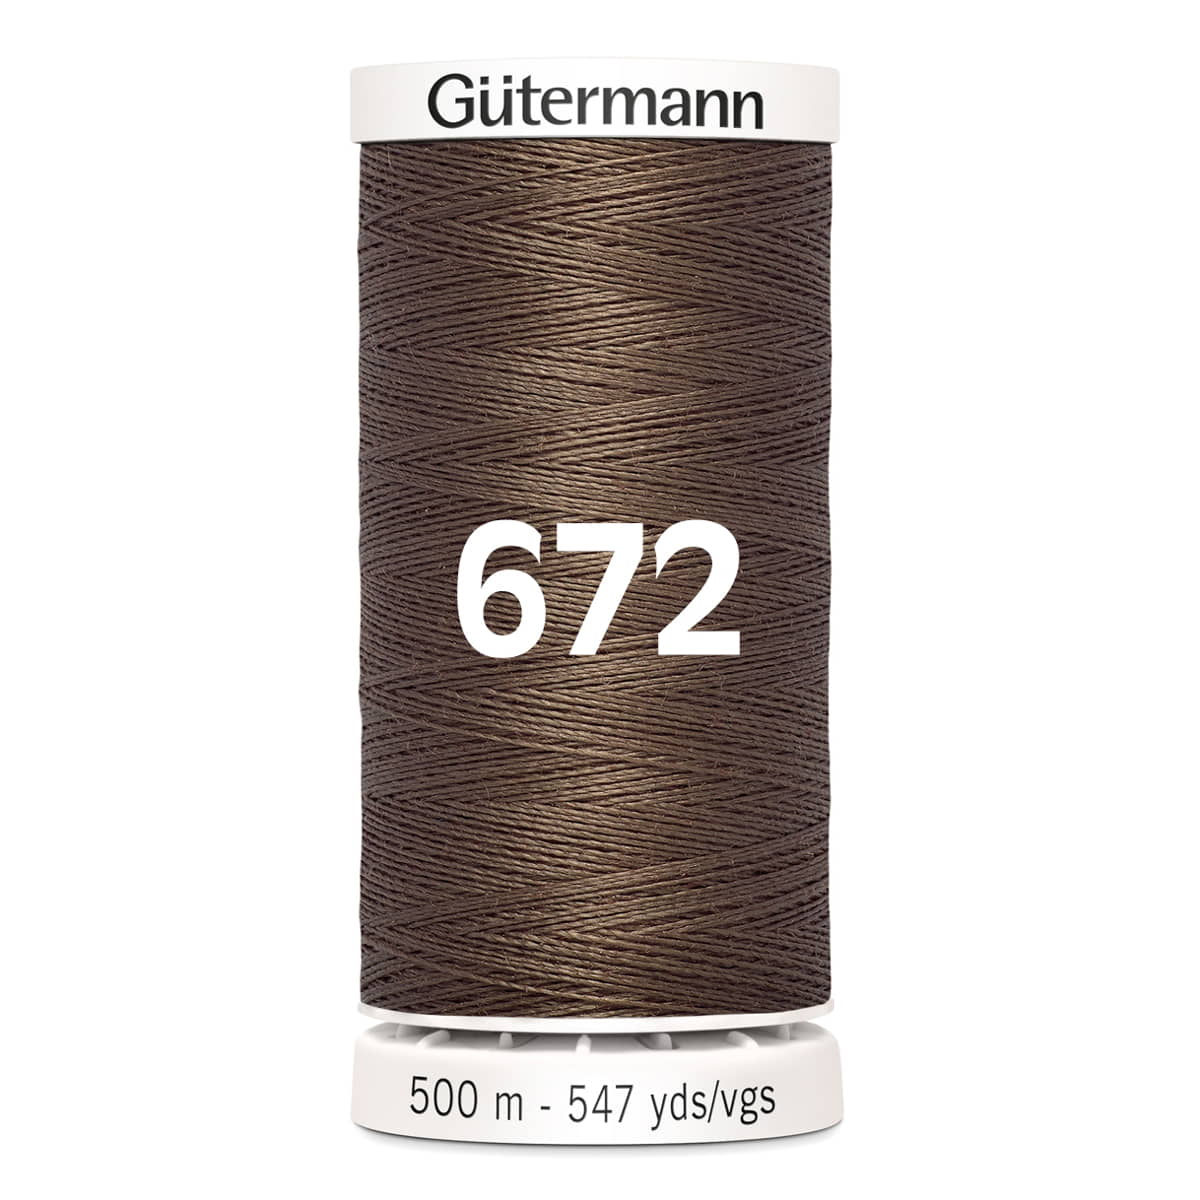 Gutermann naaigaren | 500m | 672 bruin naaigaren GM-500-672-BRUIN 4008015037123